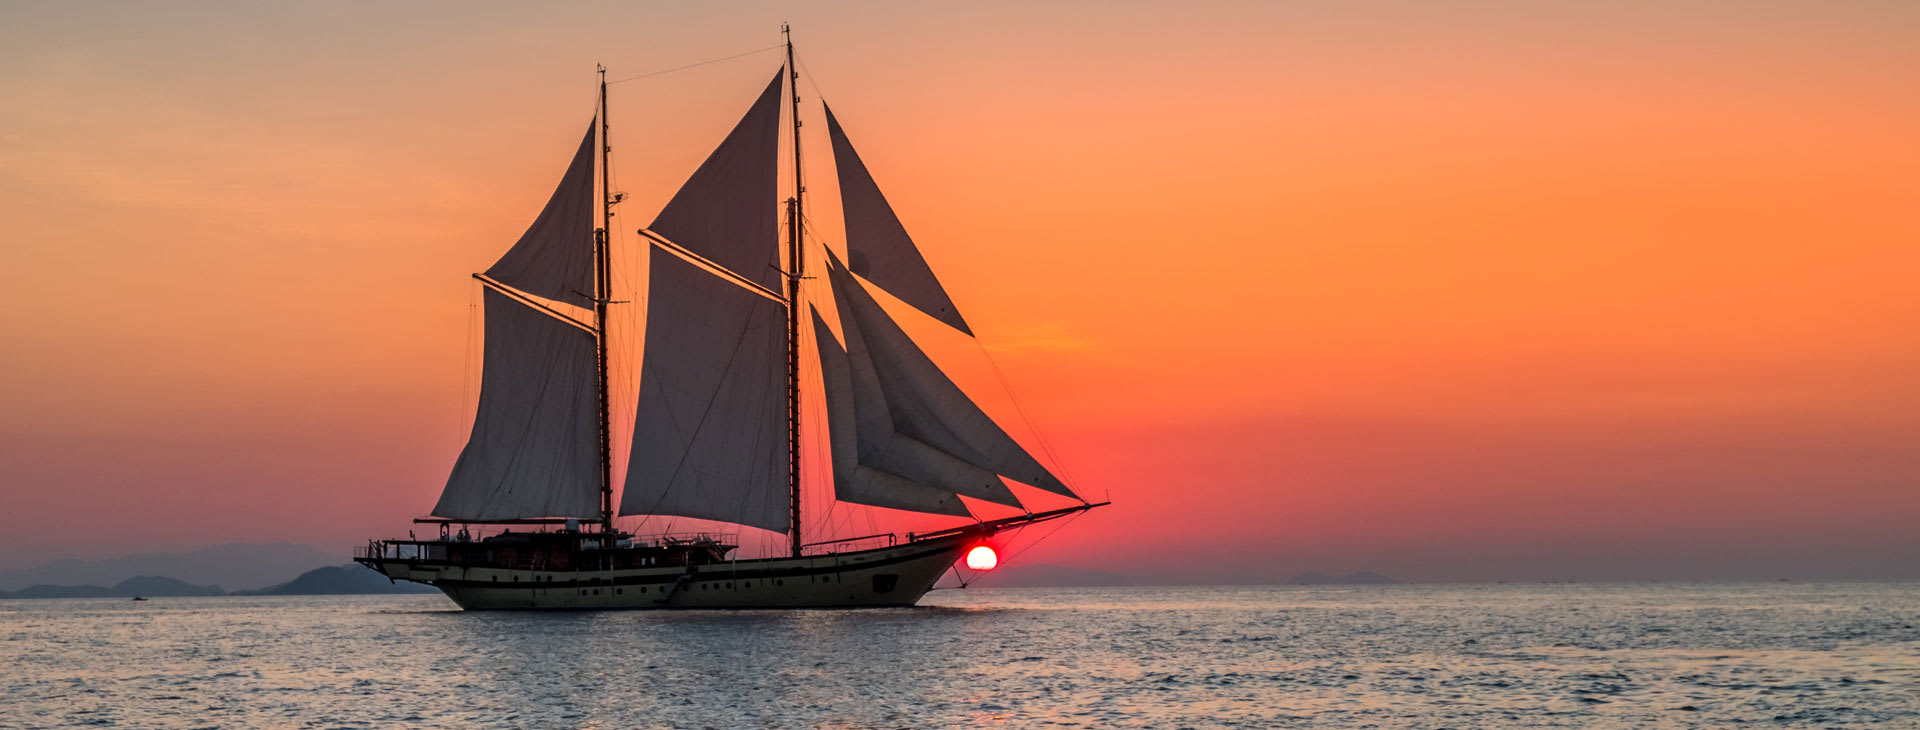 帆船在日落时分